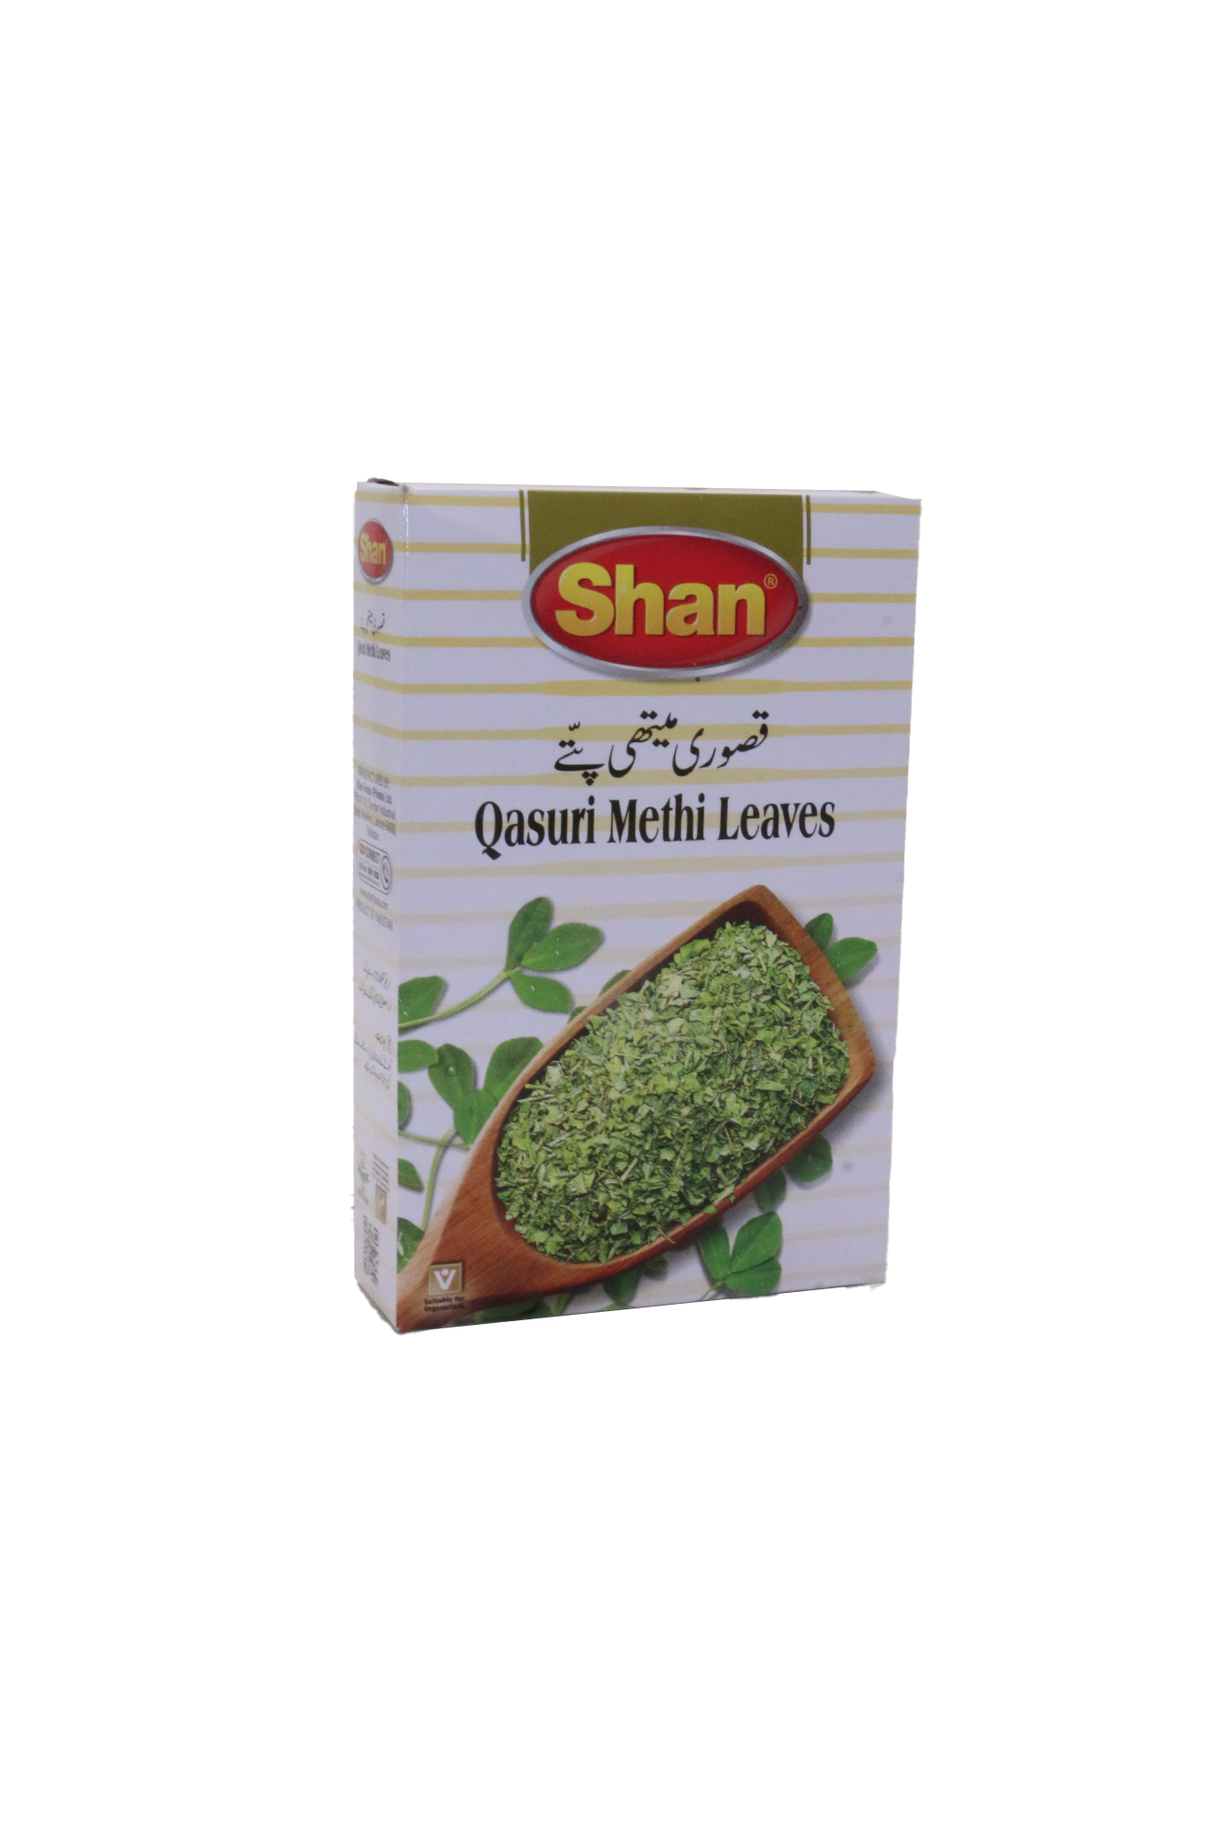 shan qasuri methi leaves 25g